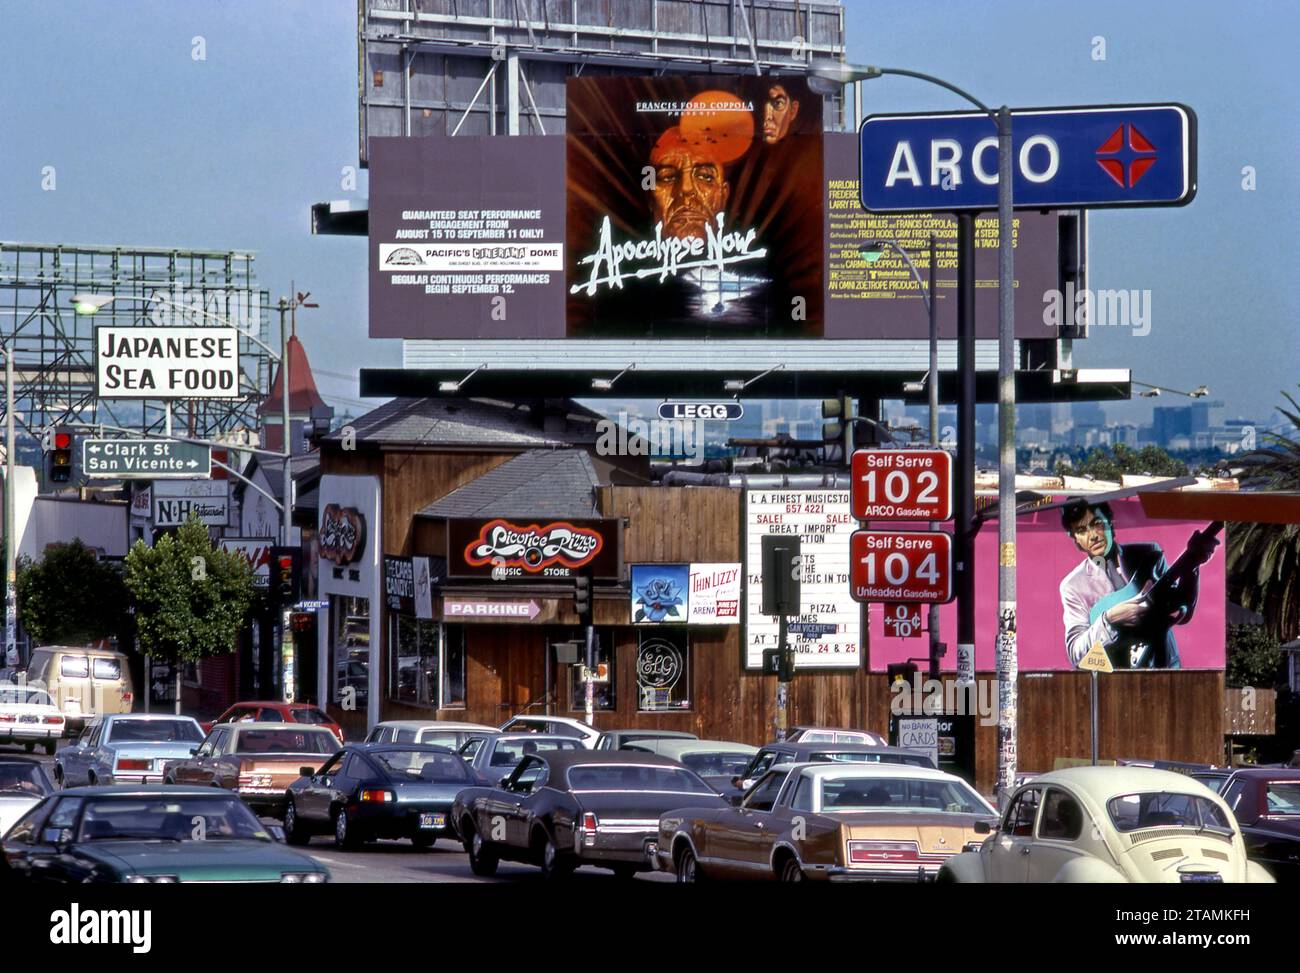 Un cartellone dipinto a mano per il film Apocalypse Now con Marlon Brando è stato pubblicato nel 1979 nel negozio di dischi Licorice Pizza sulla Sunset Strip a West Hollywood, California Foto Stock